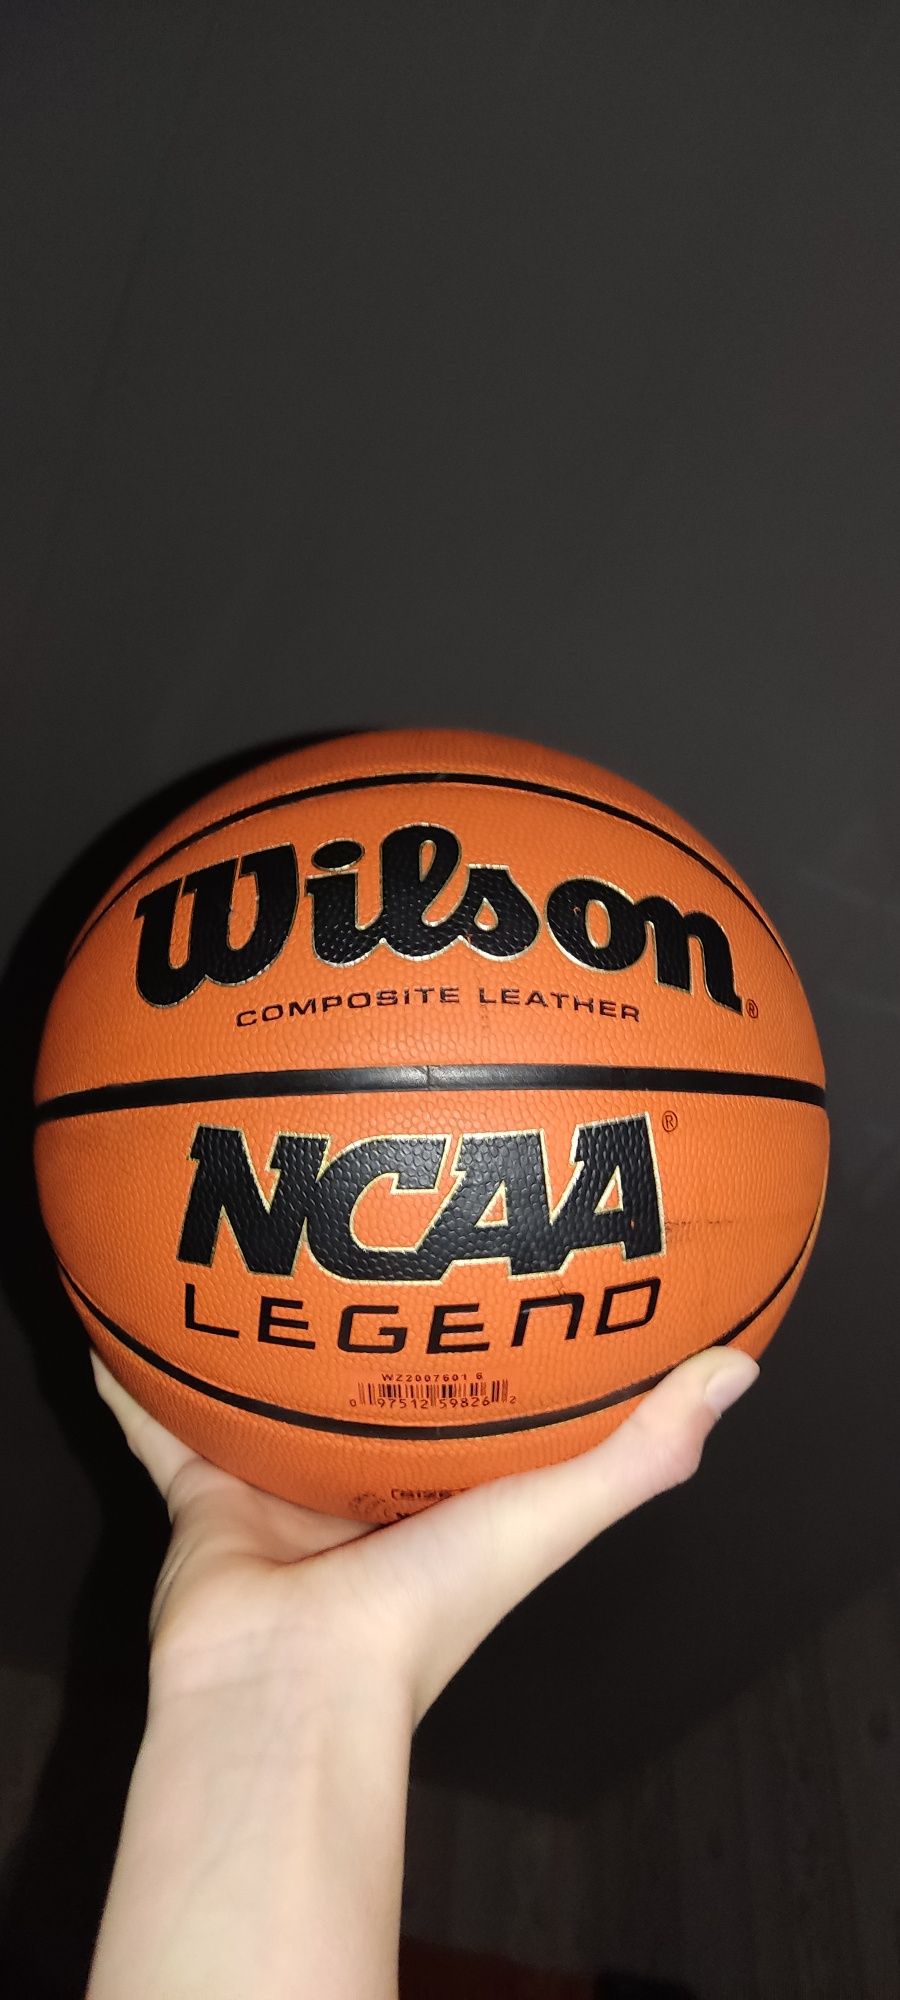 Wilson NCAA legend